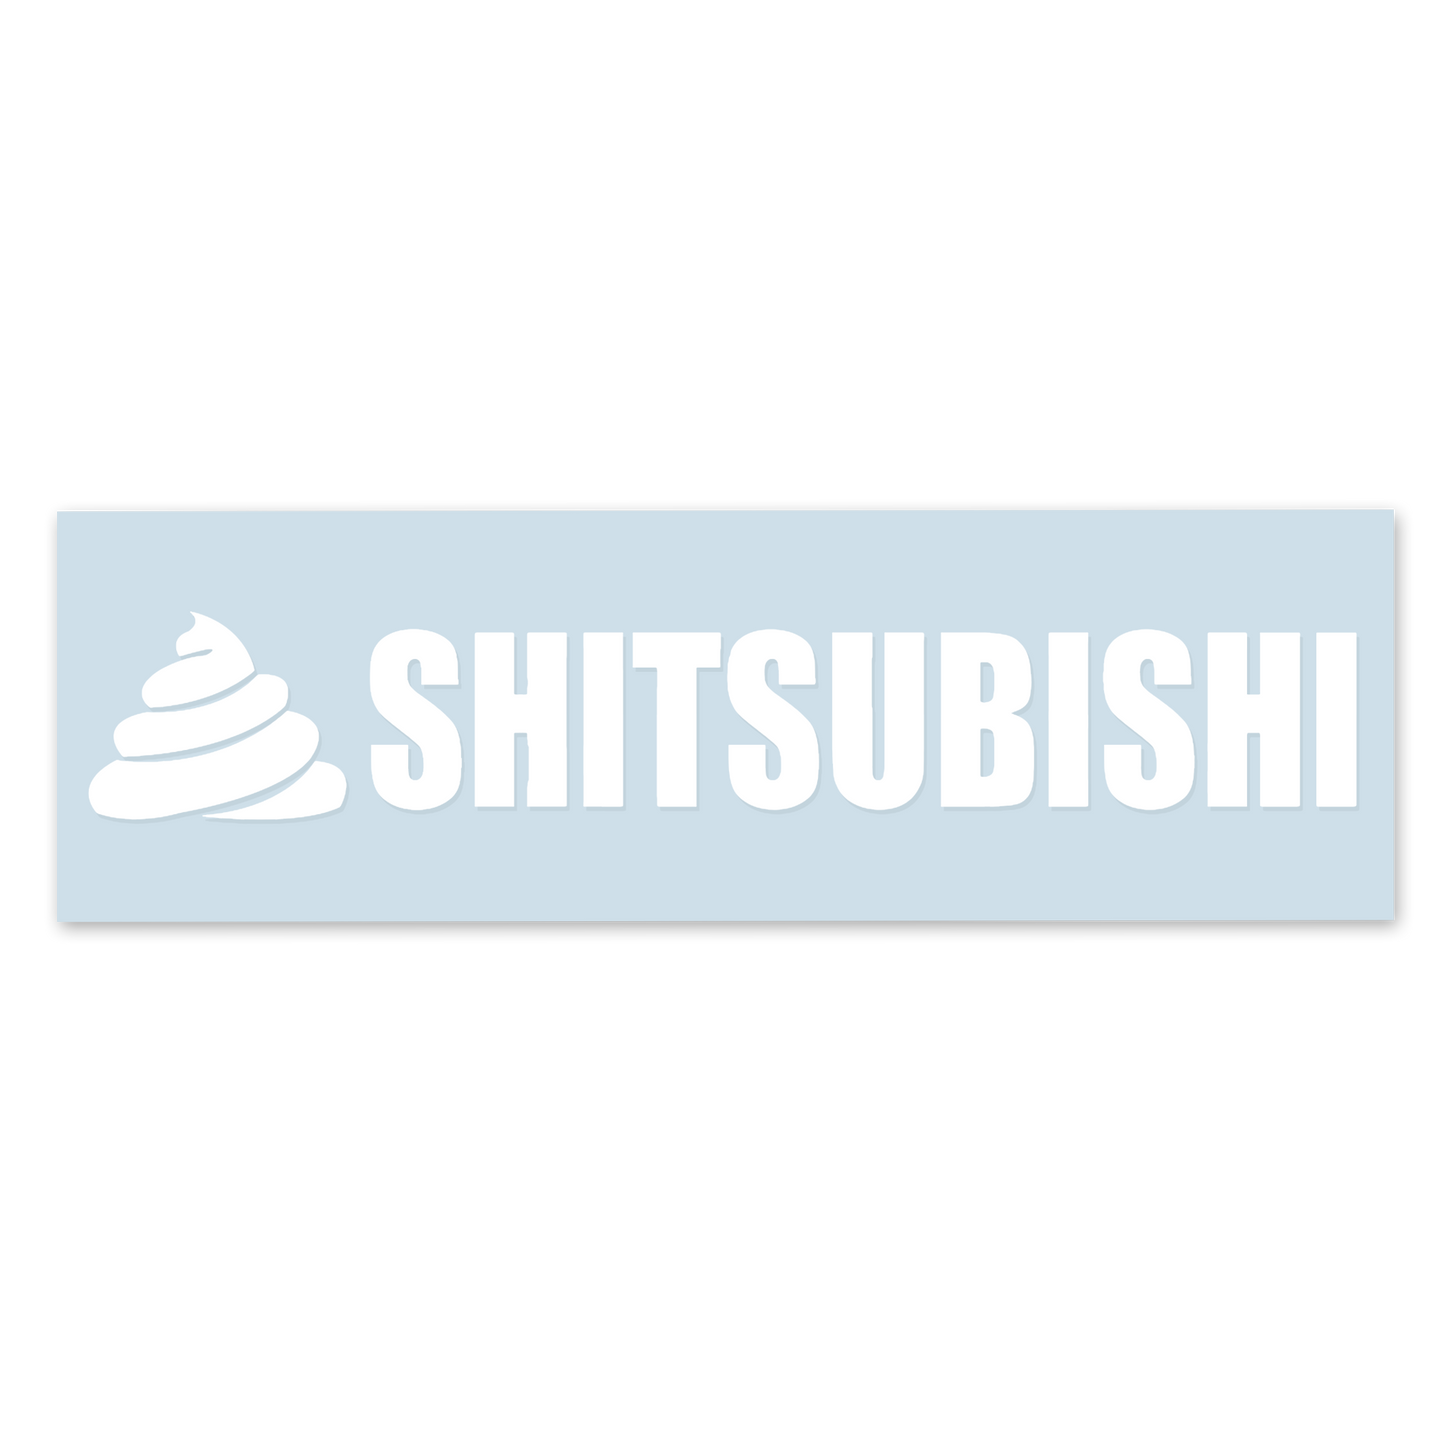 💩 Shitsubishi